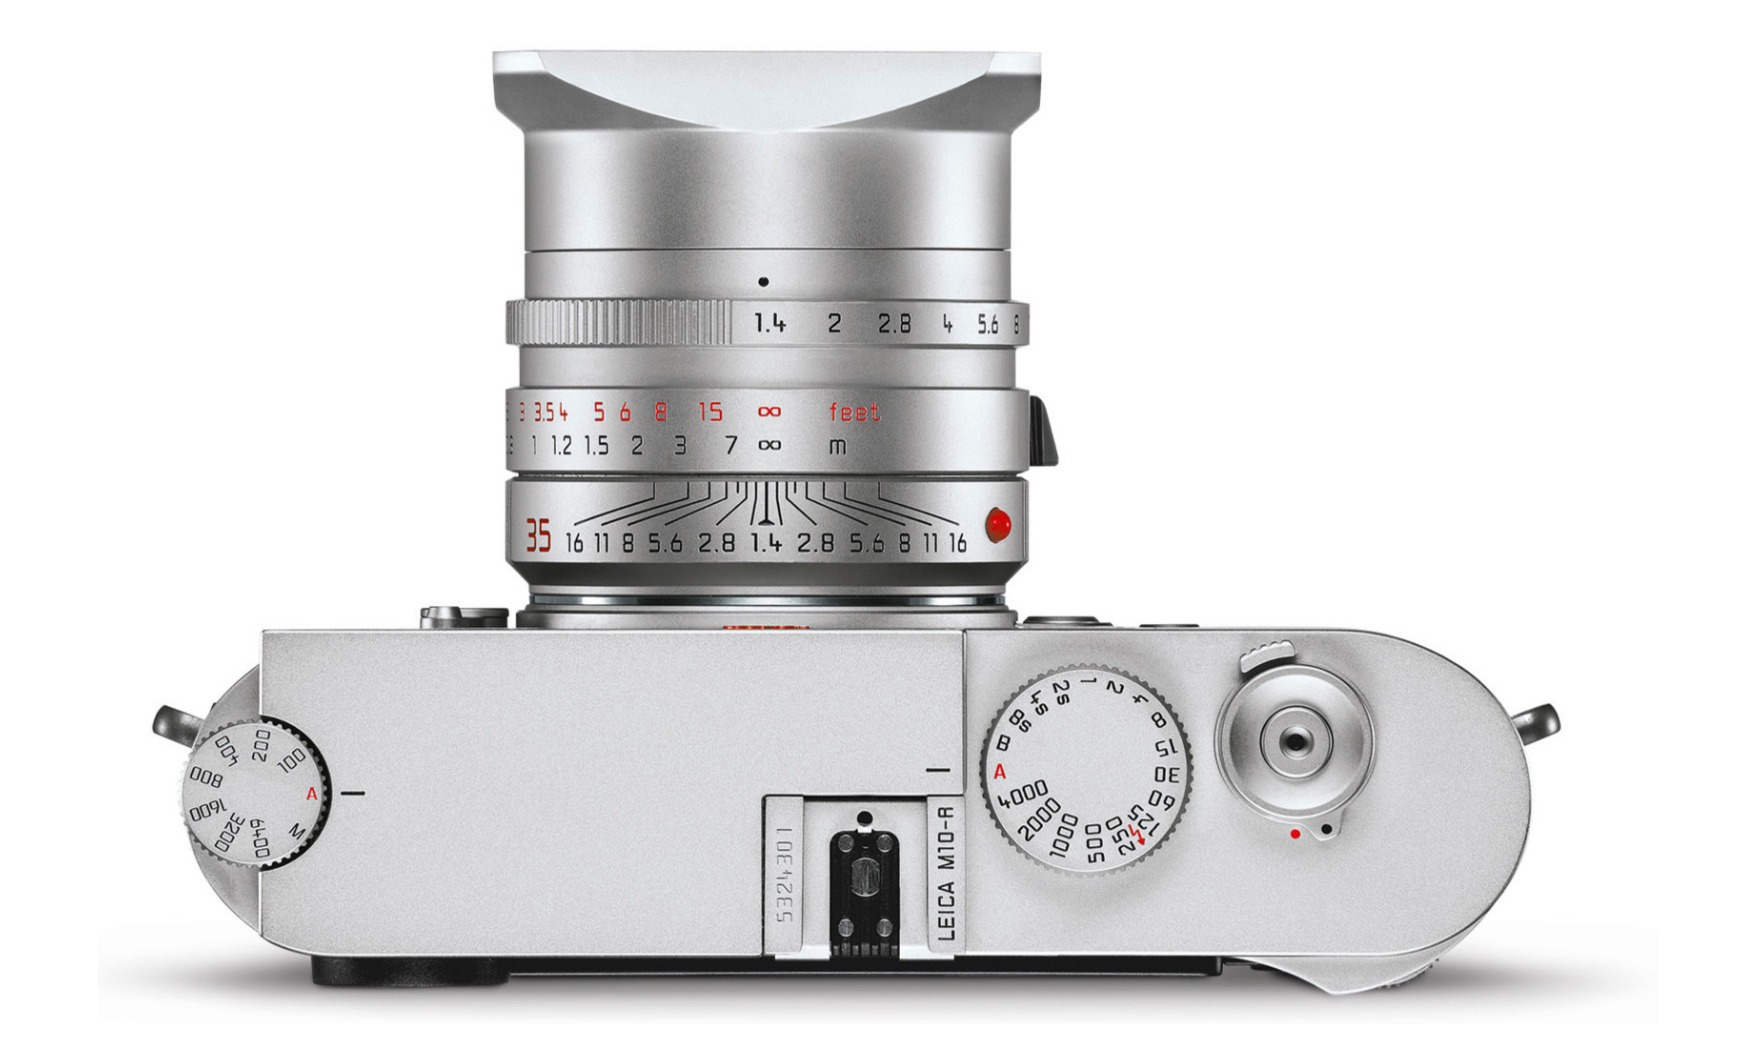 Chiếc máy ảnh Leica M10-R sẽ được ra mắt vào tối nay vào lúc 8 giờ tối